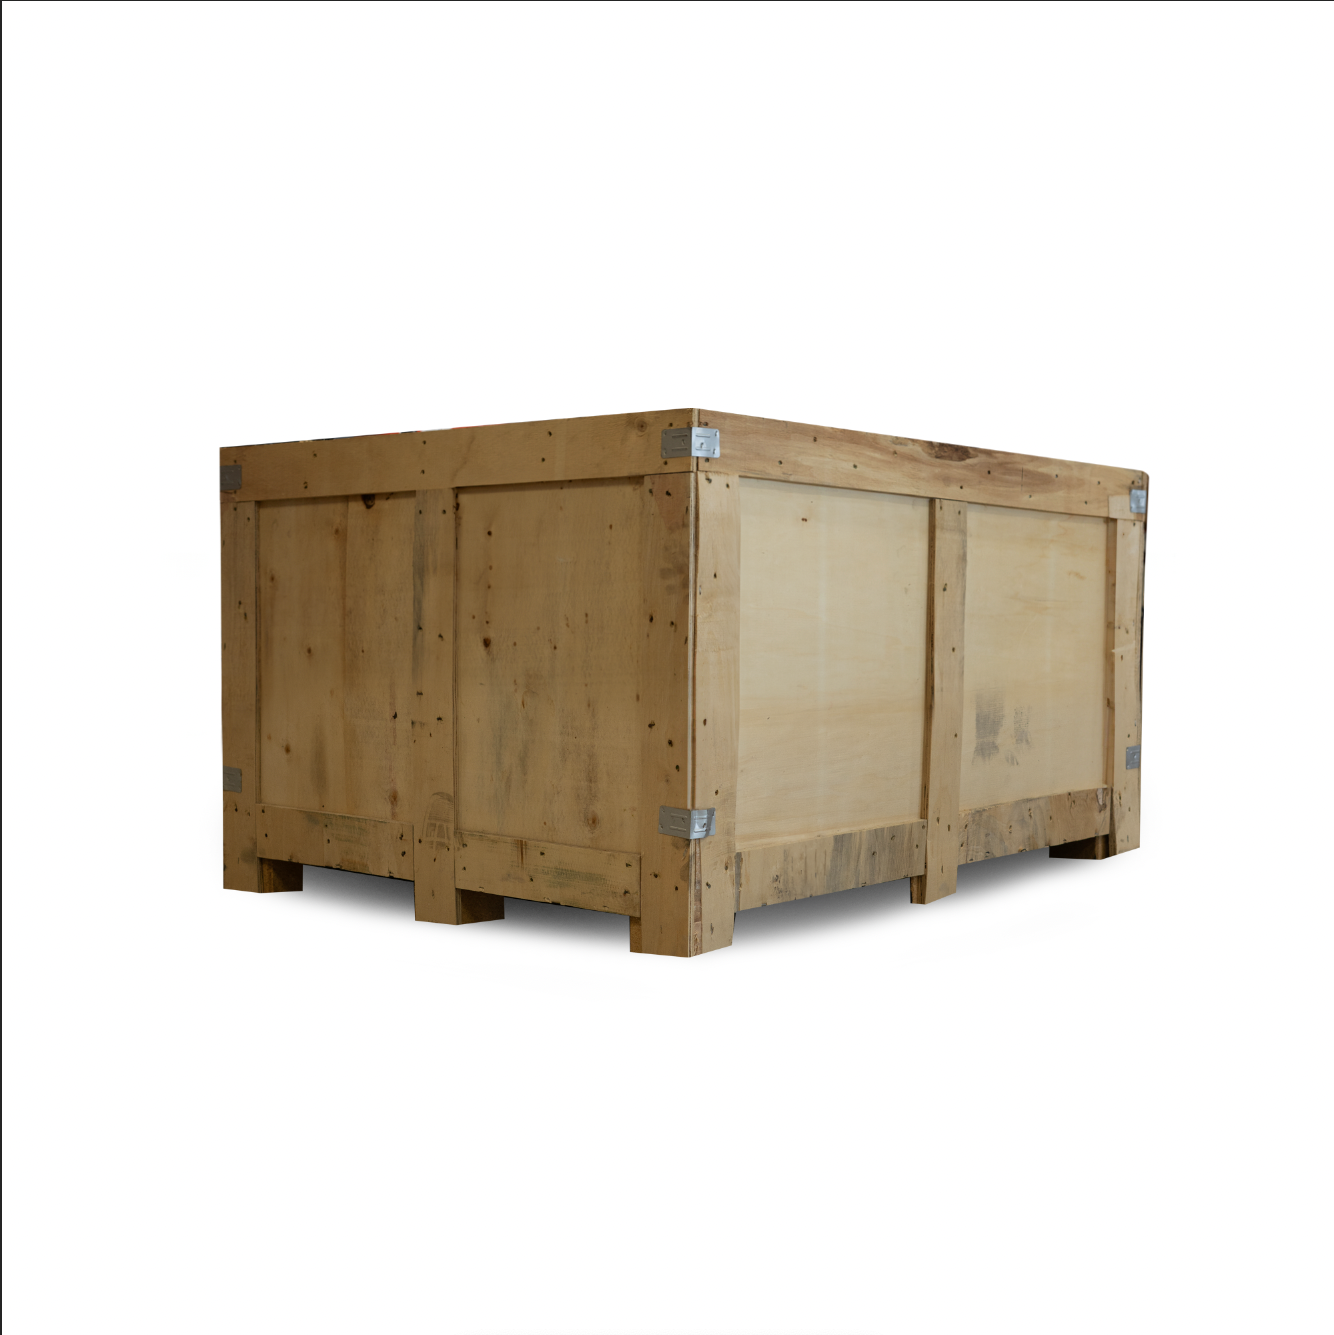 Trailer Double Eye Tandem Hanger Kit for 3500 - 7000 lb Axles in Bulk Kit (50pc) or Crate (124pc)